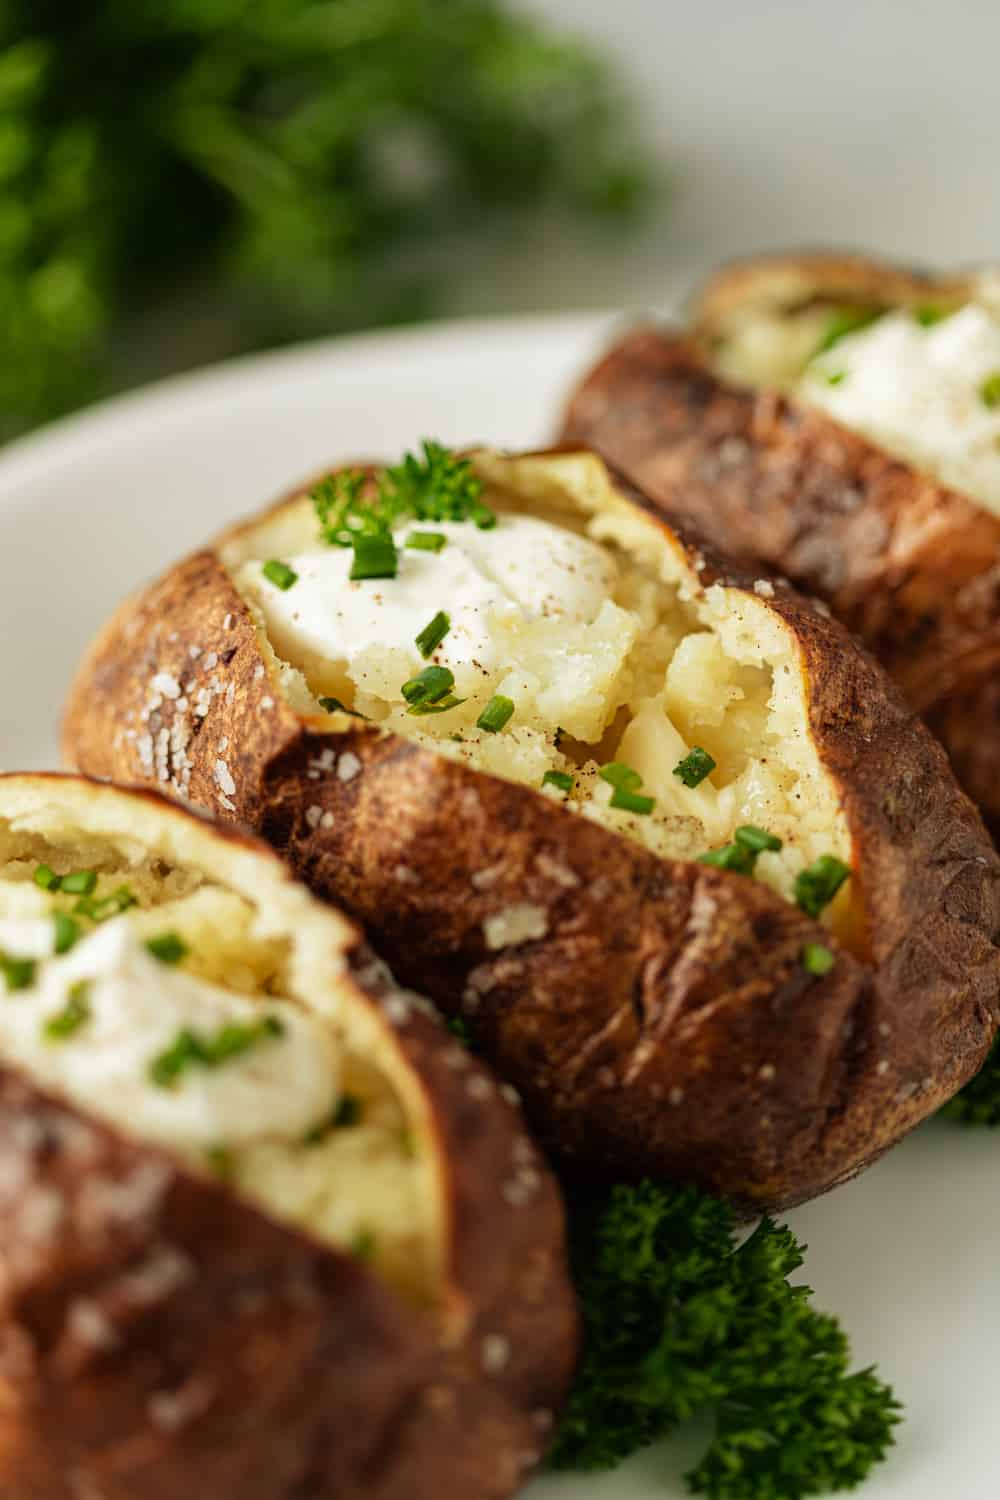 Baked potato - Recibeauty